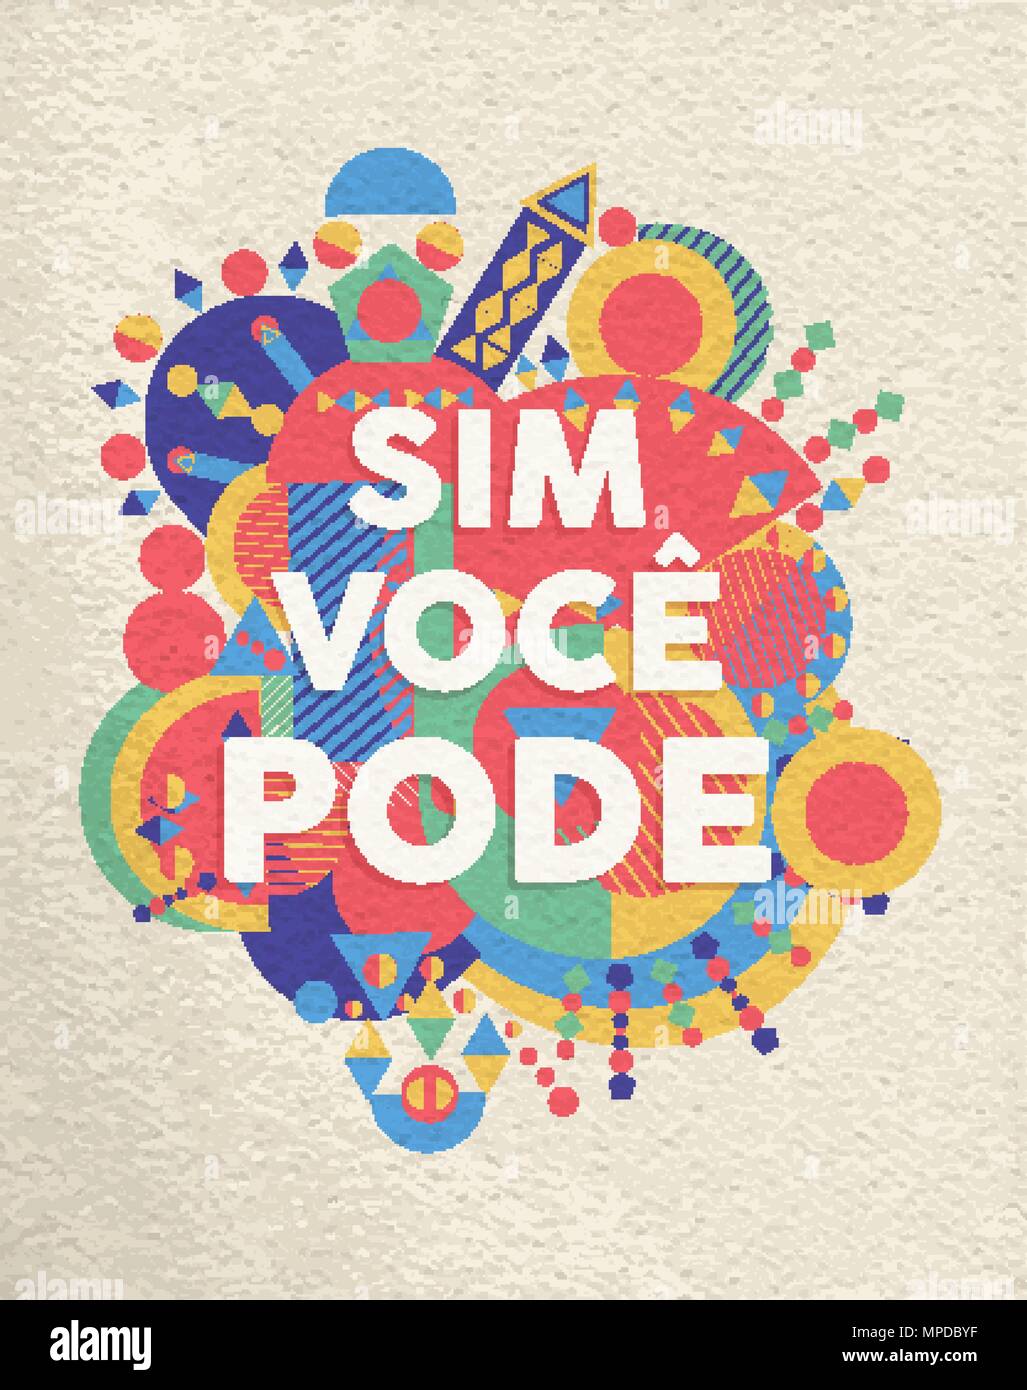 Ja, das können Sie bunte Typografie Plakat in portugiesischer Sprache. Inspirational motivation Zitat Design mit Papier Textur Hintergrund. EPS 10 Vektor. Stock Vektor